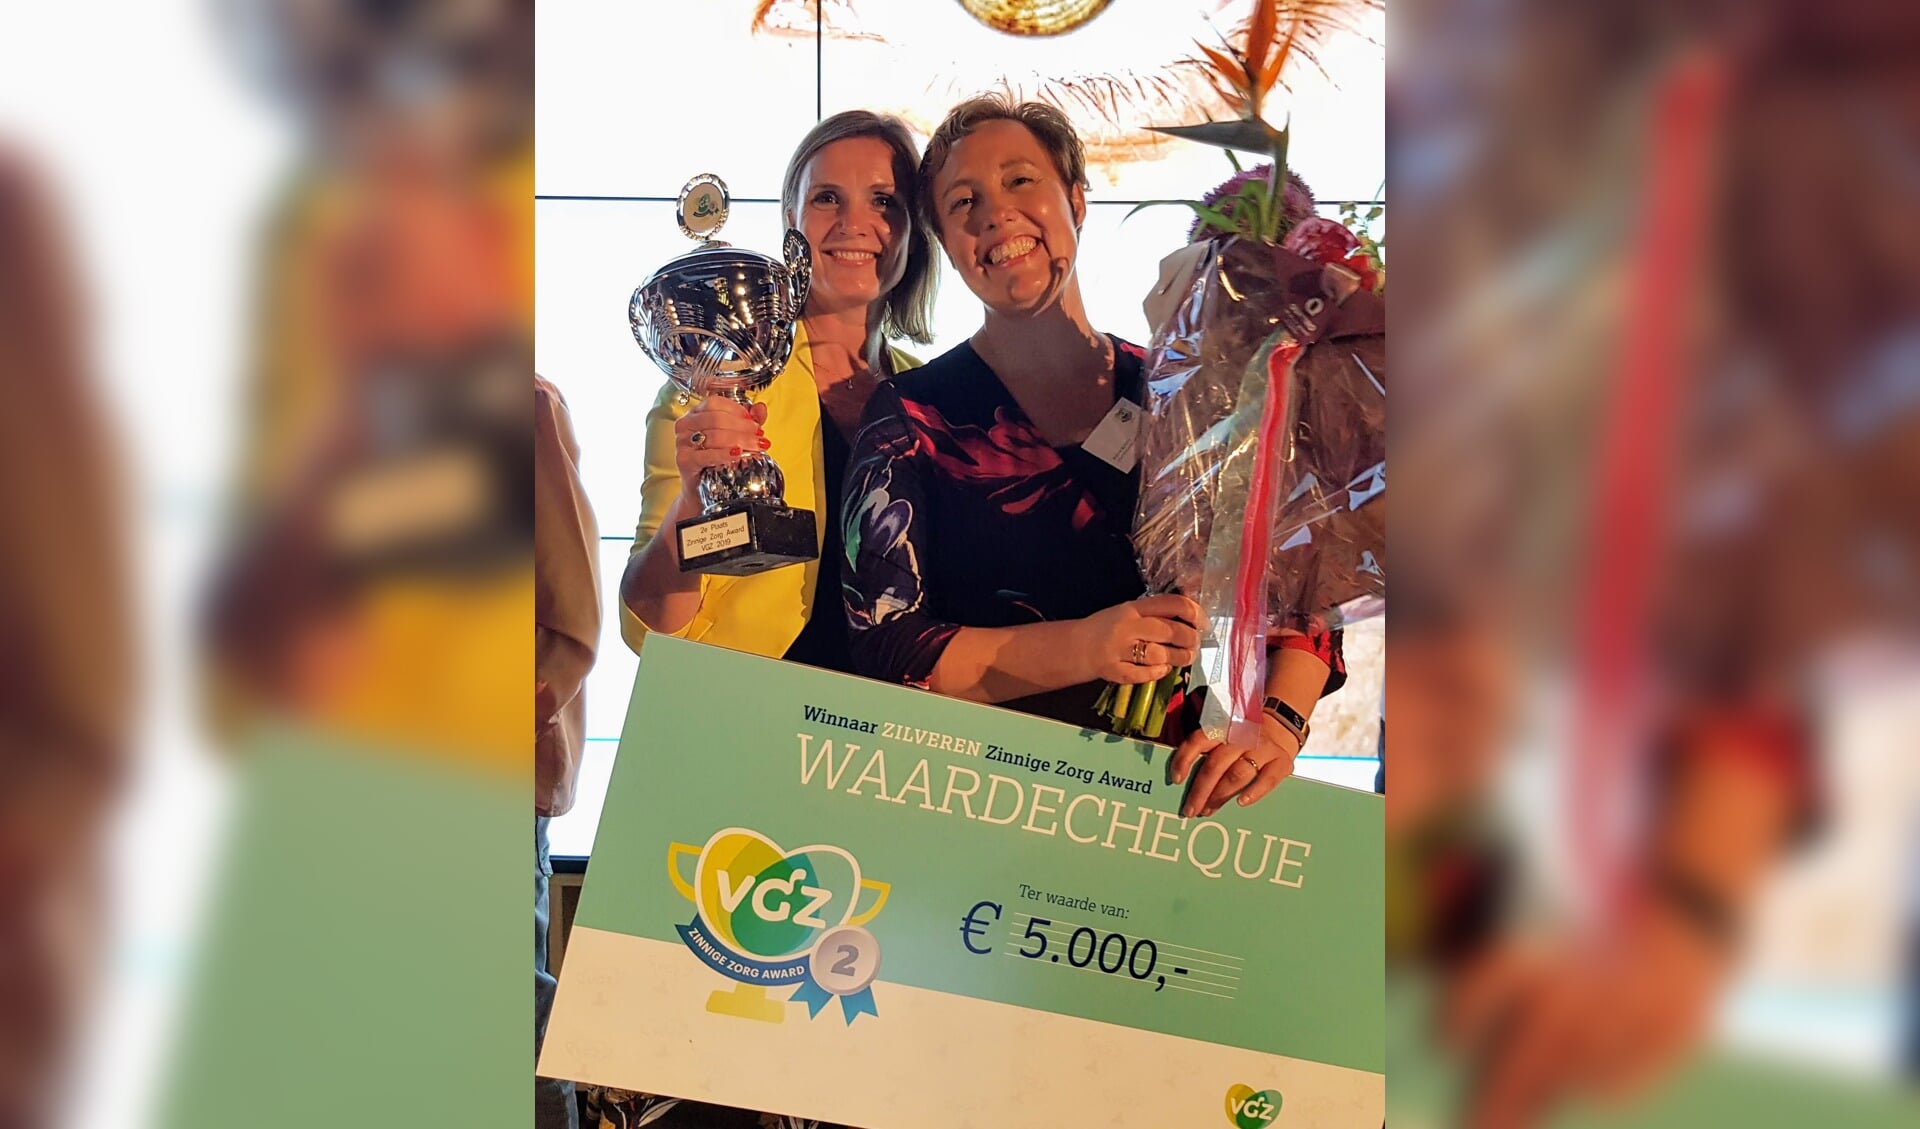 Poliklinisch apotheker Maryse Spapens (rechts) en afdelingshoofd van het Transmuraal Team Claudia Jonker nemen de cheque ter waarde van 5.000 euro in ontvangst.